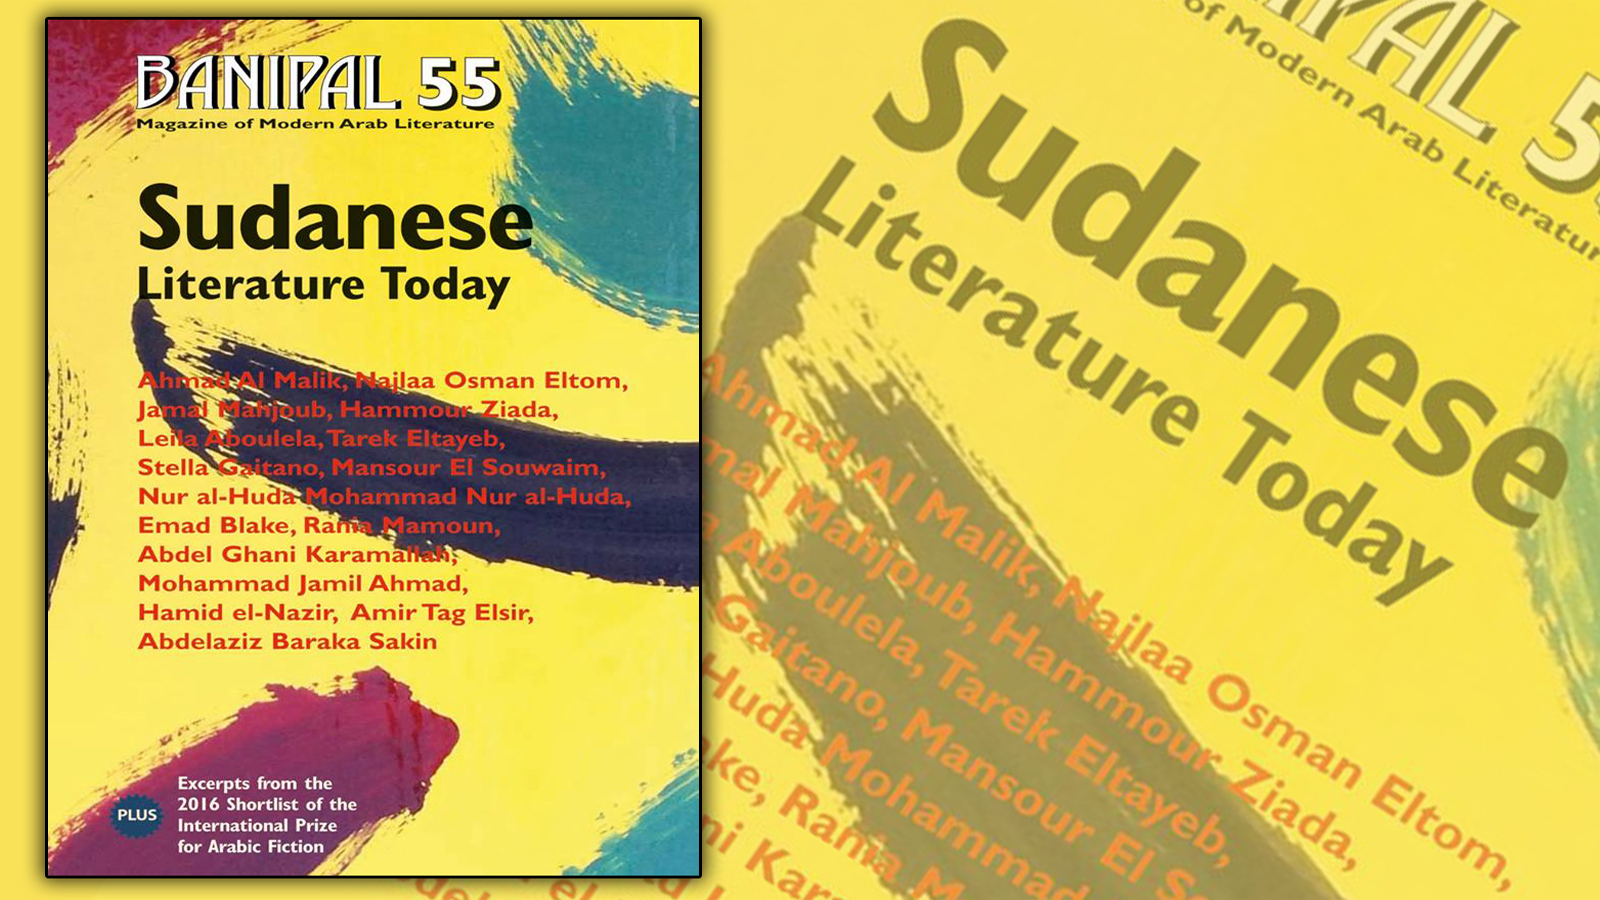 مجلة بانيبال تحتفي بالأدب السوداني المعاصر